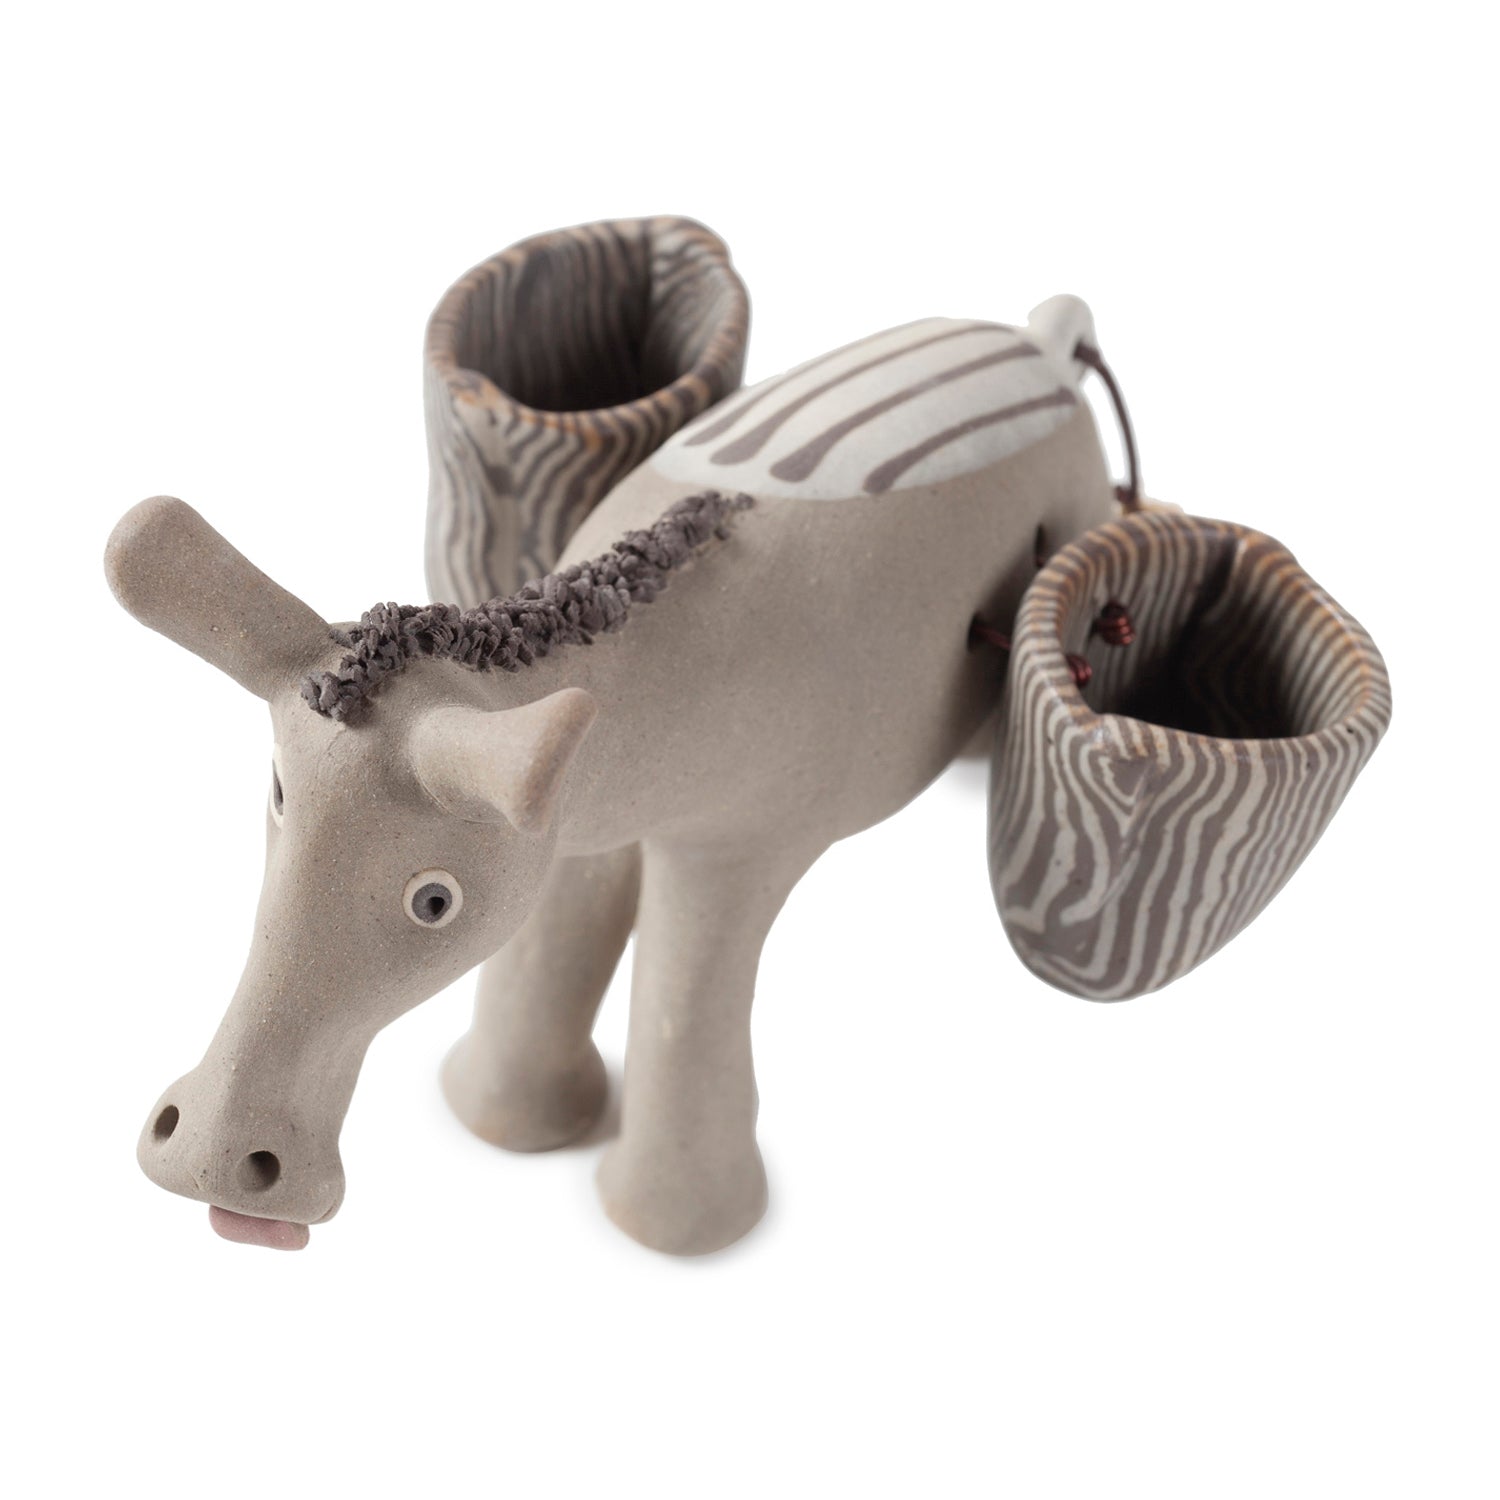 Miniature Clay Animals - Donkey